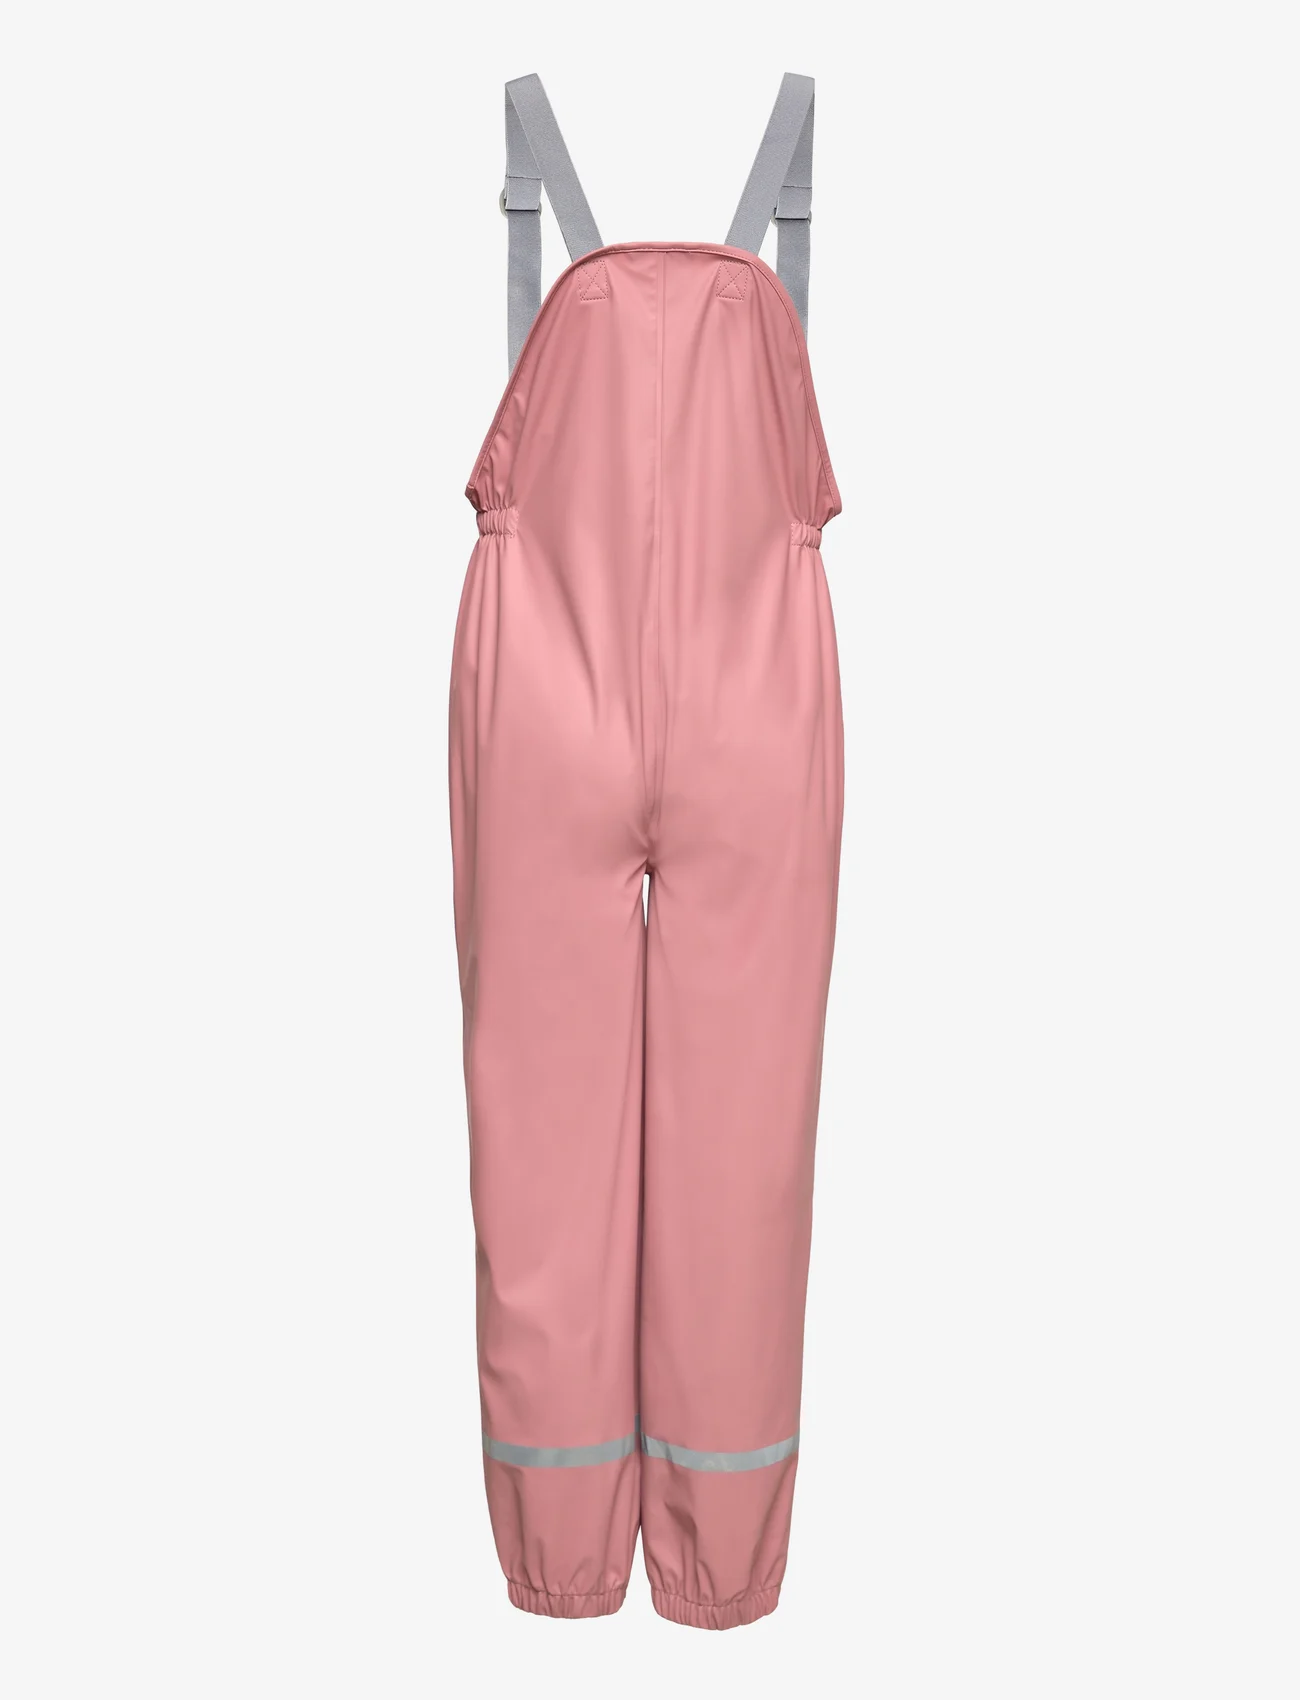 Color Kids - Pants PU - W. Suspender - laveste priser - ash rose - 1